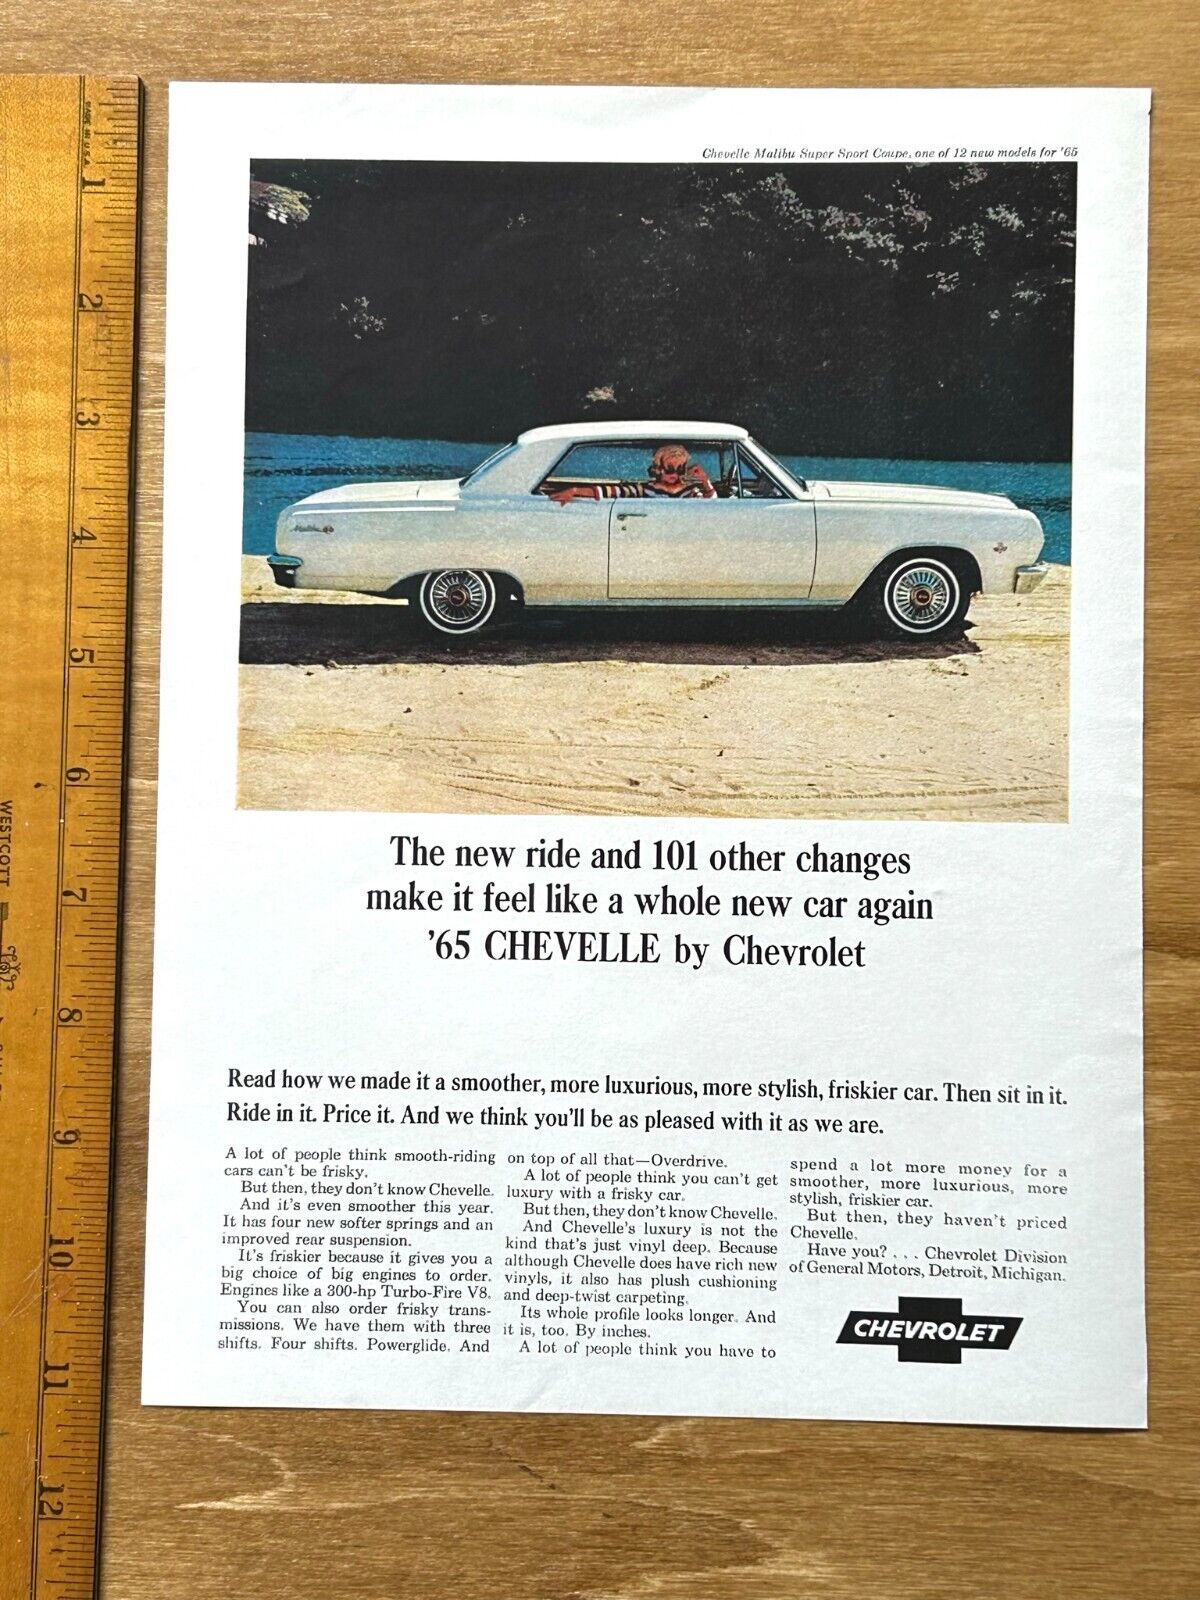 Original 1965 Chevrolet Chevelle Malibu Super Sport Coupe Car Ad